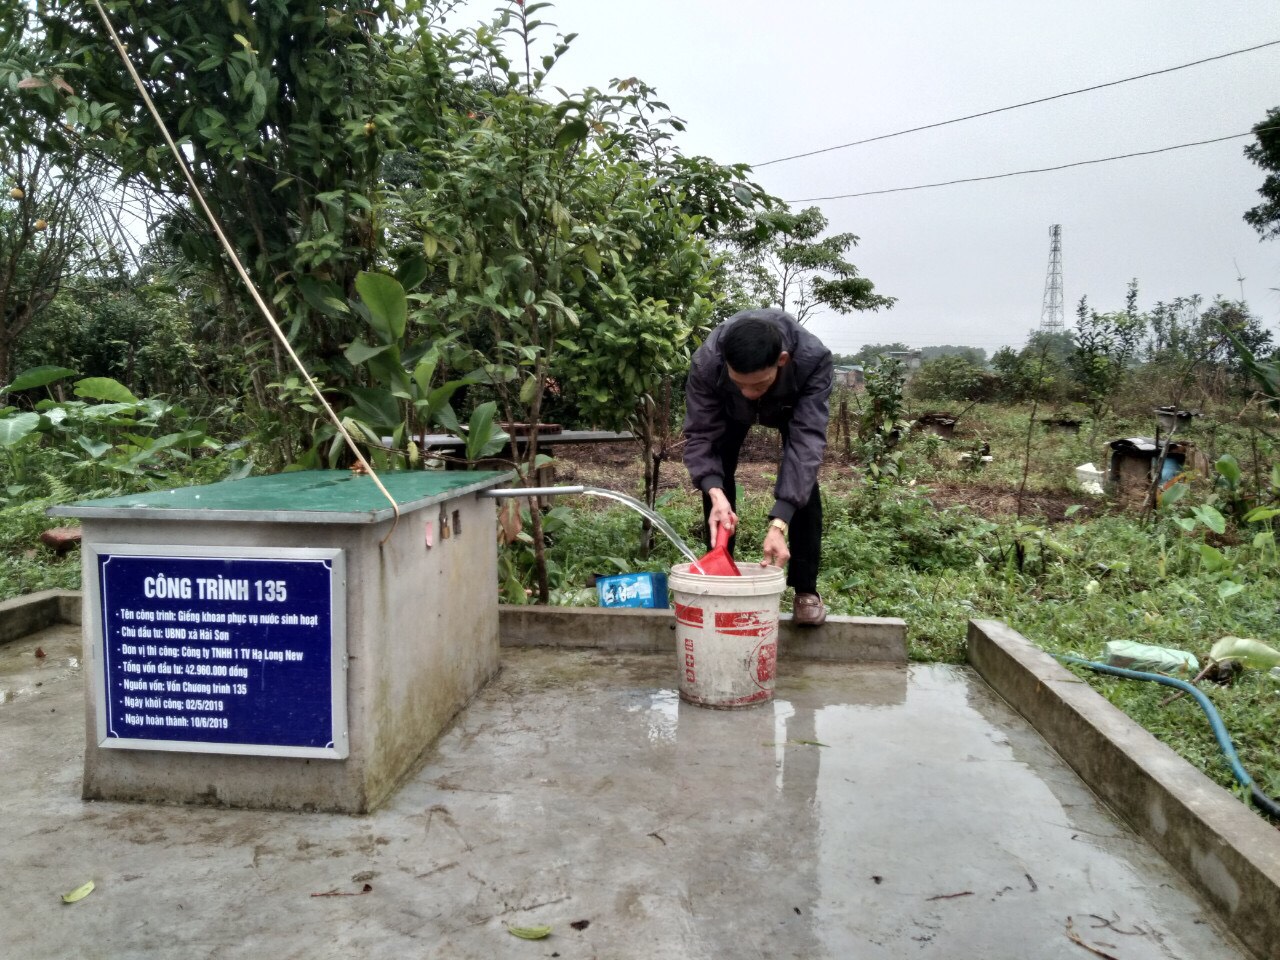 Từ nguồn vốn 135, nhiều hộ dân xã Hải Sơn, được đầu tư giếng khoan đảm bảo sử dụng nước hợp vệ sinh. Giếng khoan hộ gia đình ông Đặng Văn Chung, thôn Pò Hèn. 